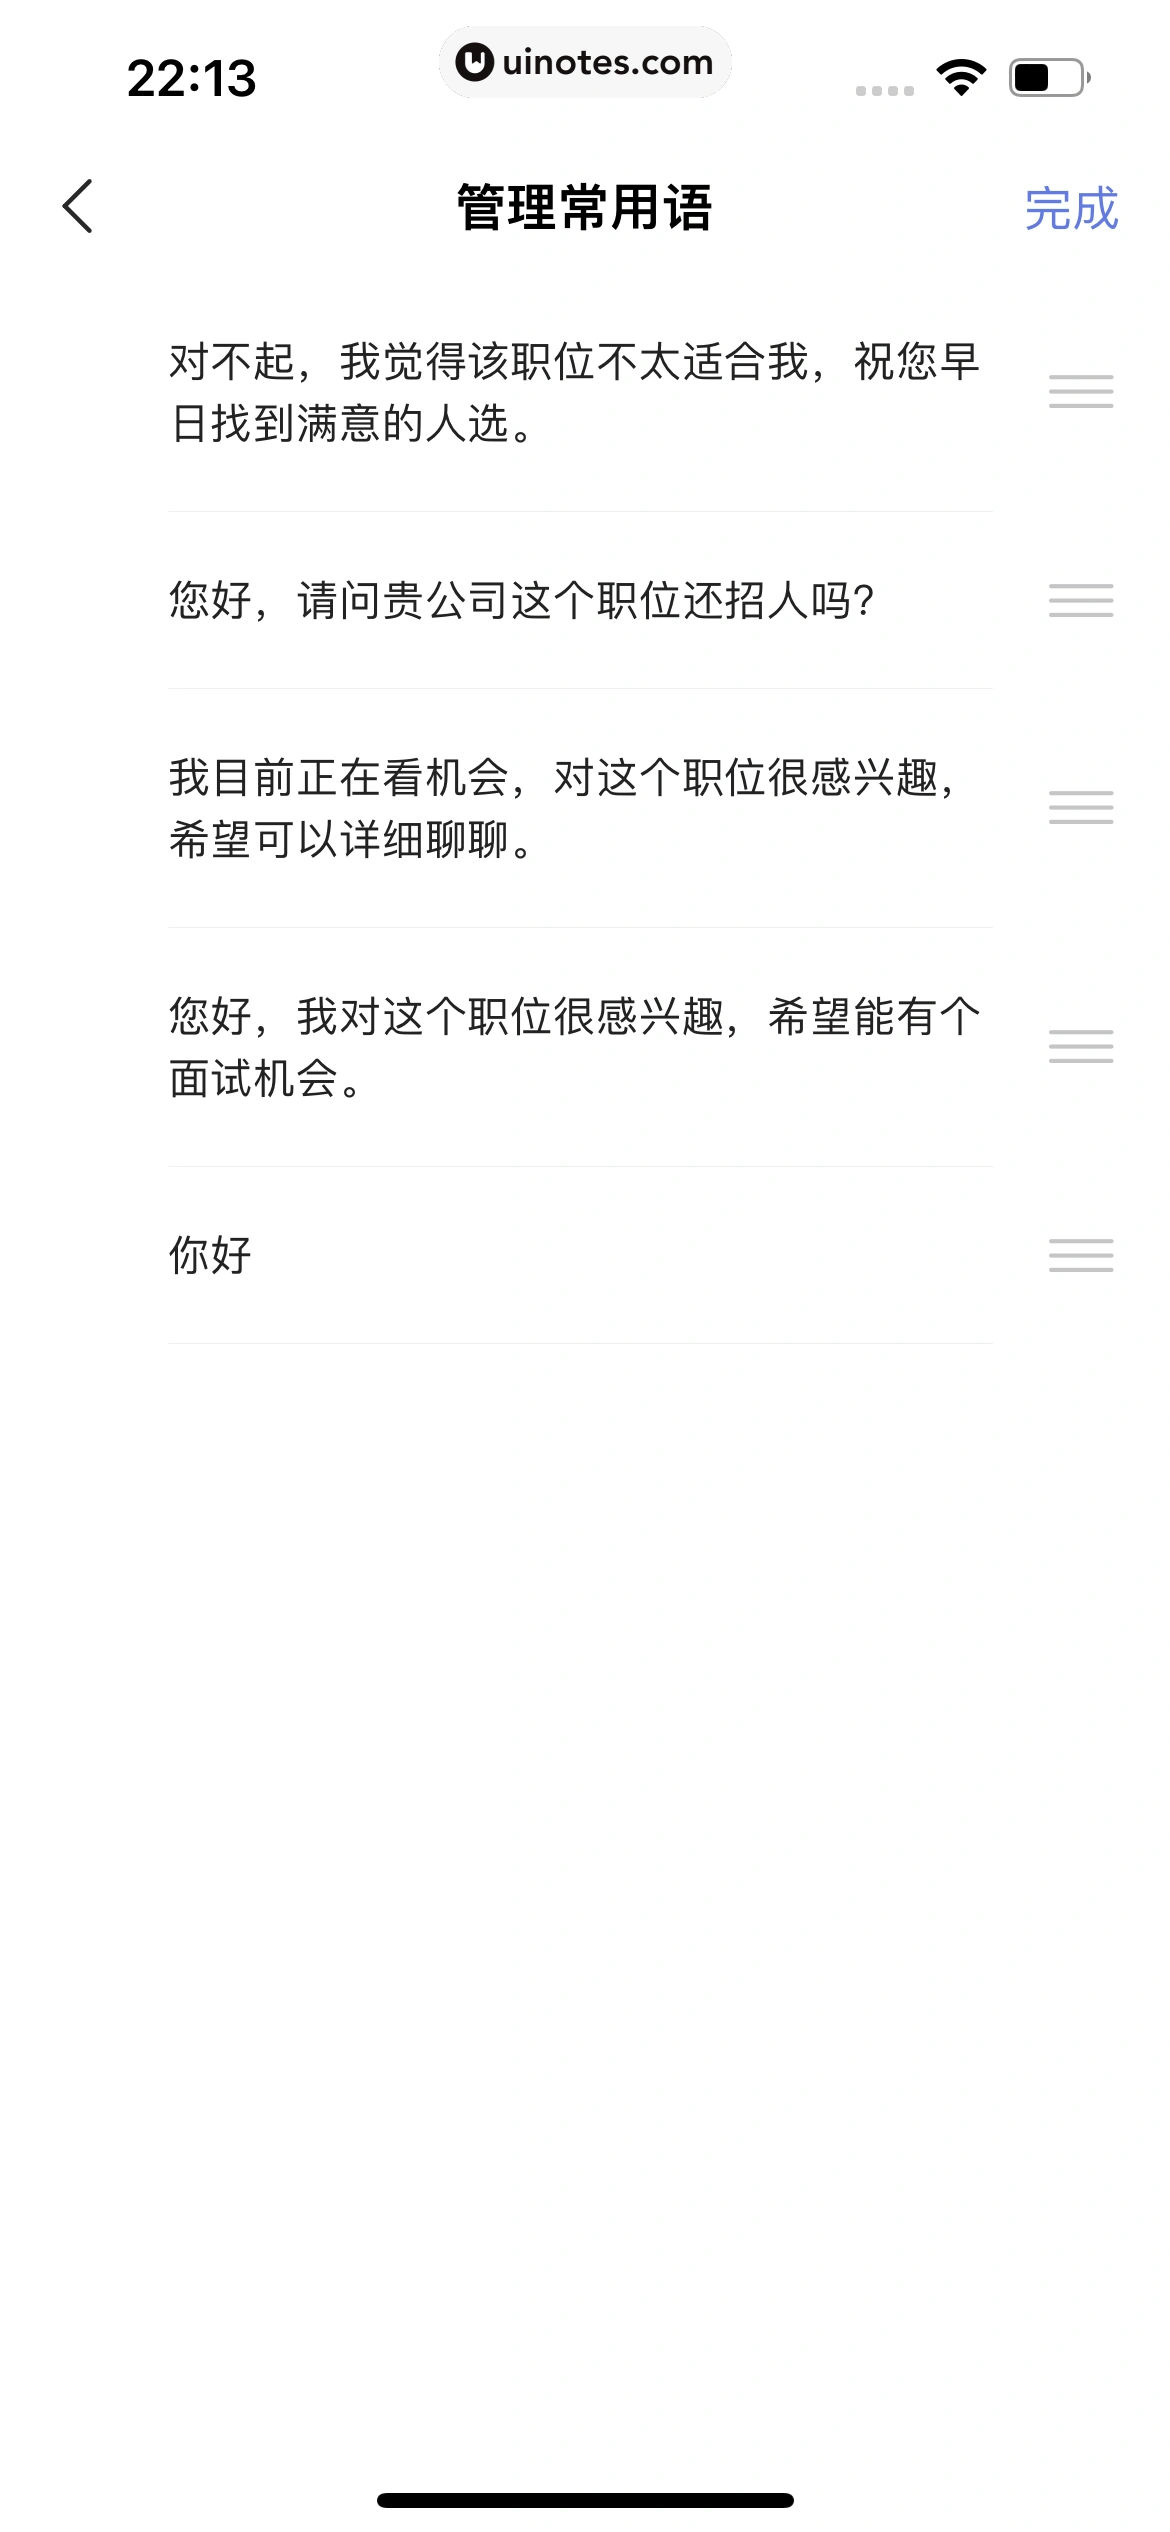 智联招聘 App 截图 203 - UI Notes